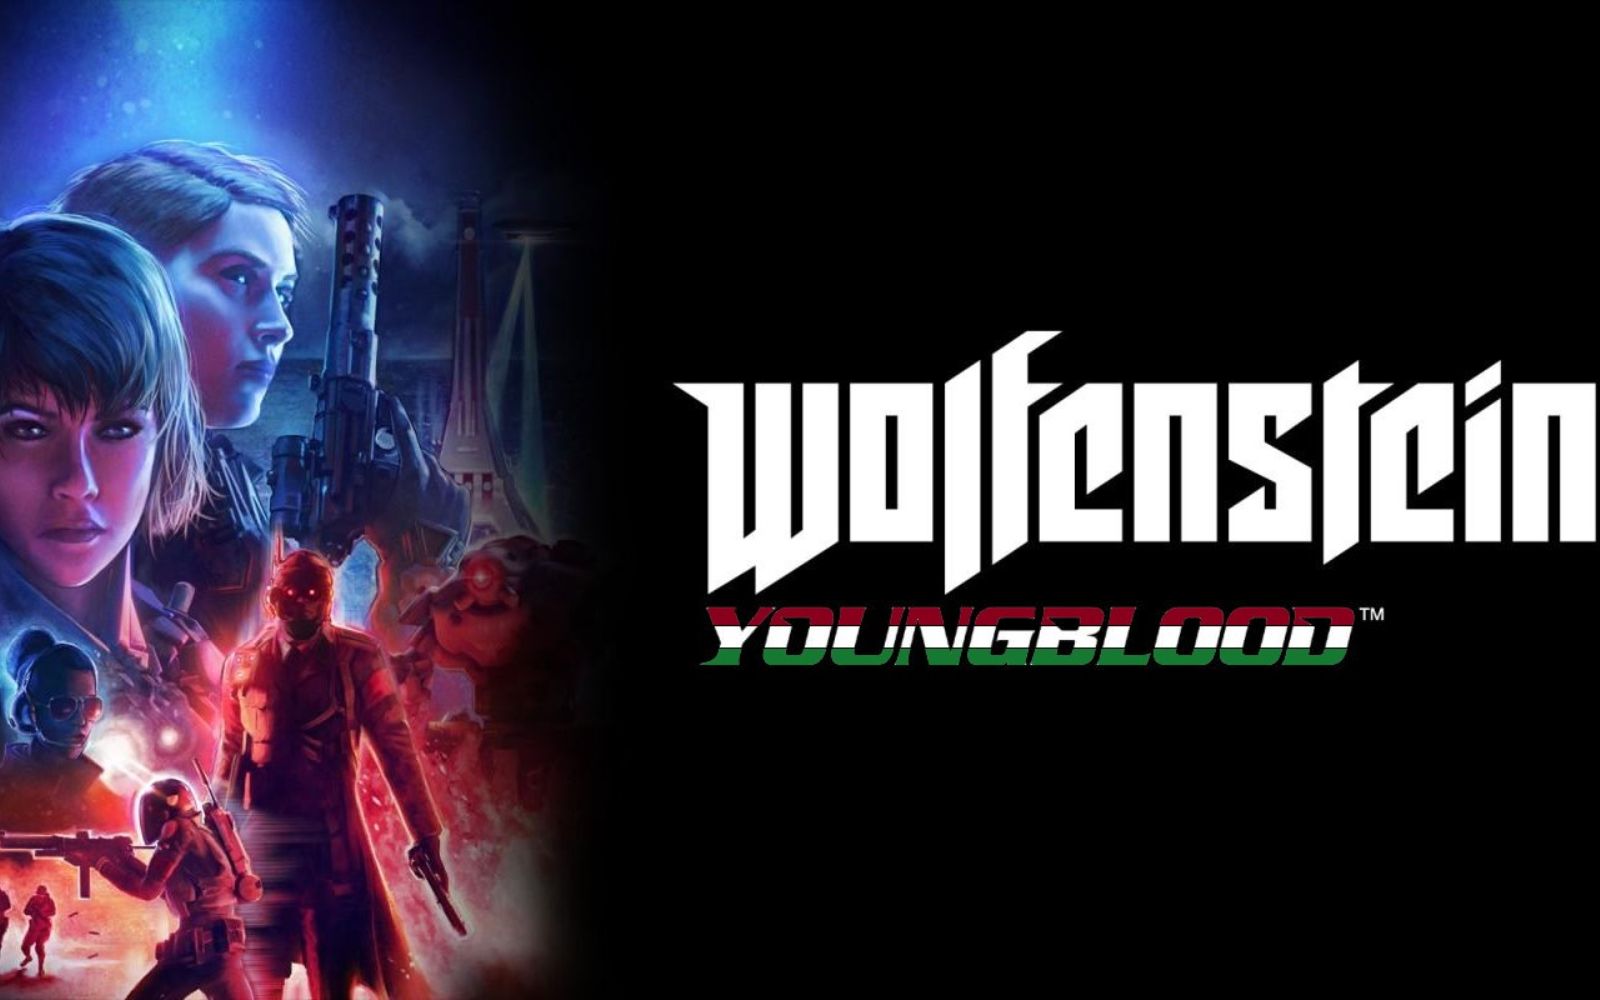 Wolfenstein: Youngblood